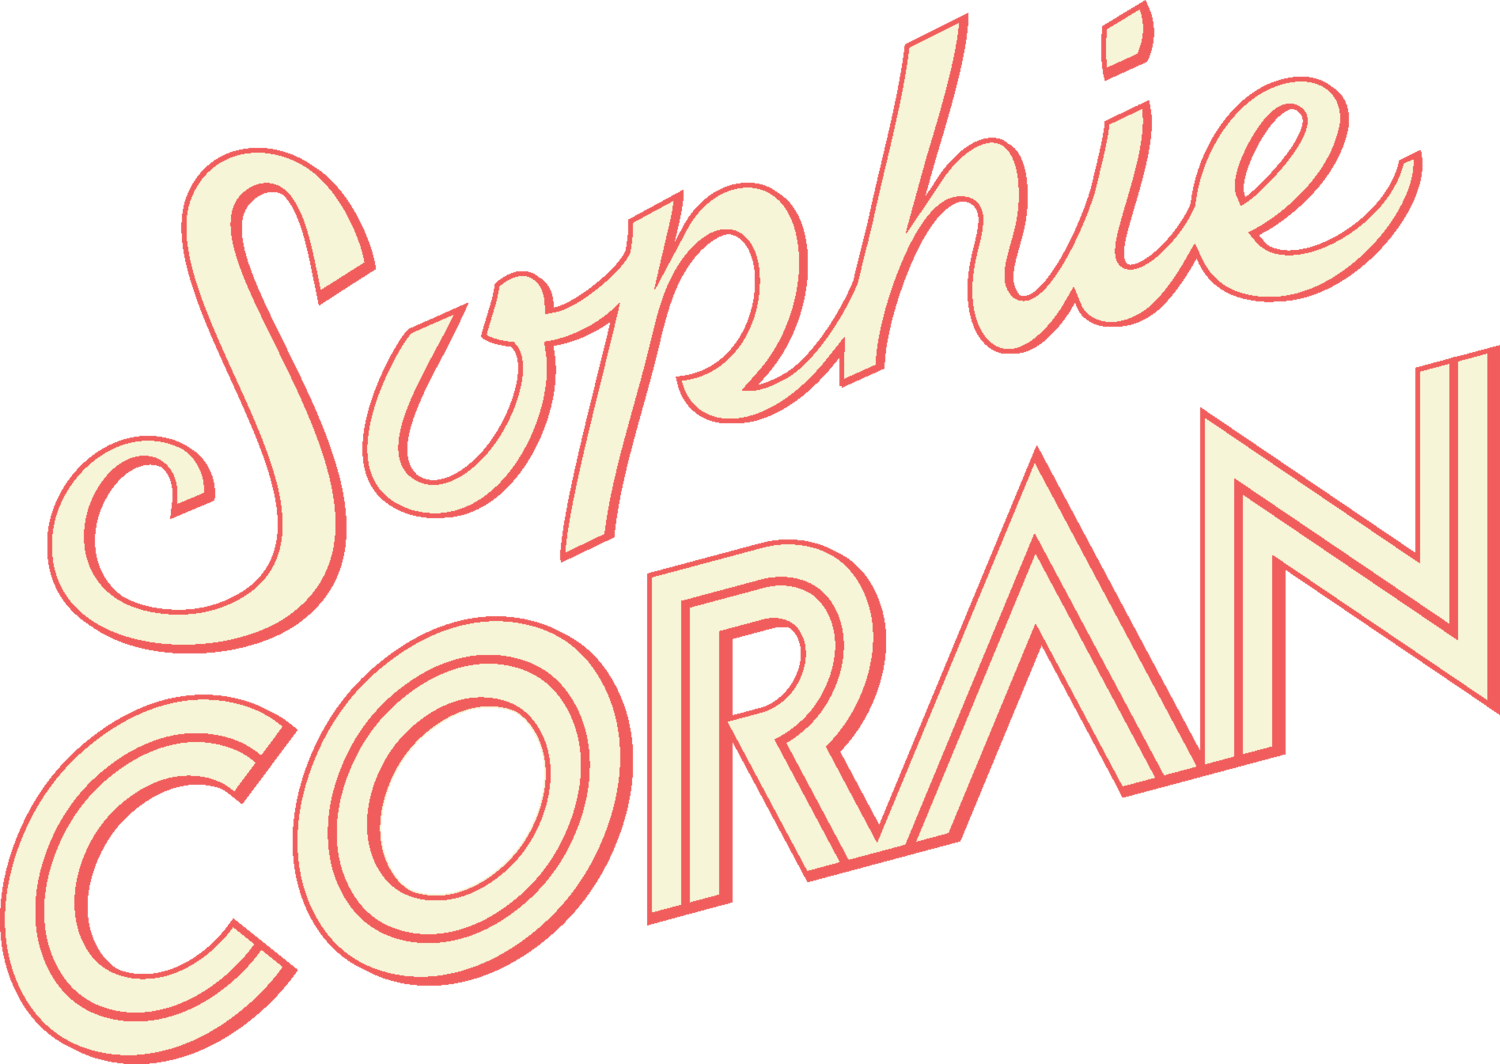 Sophie Coran 